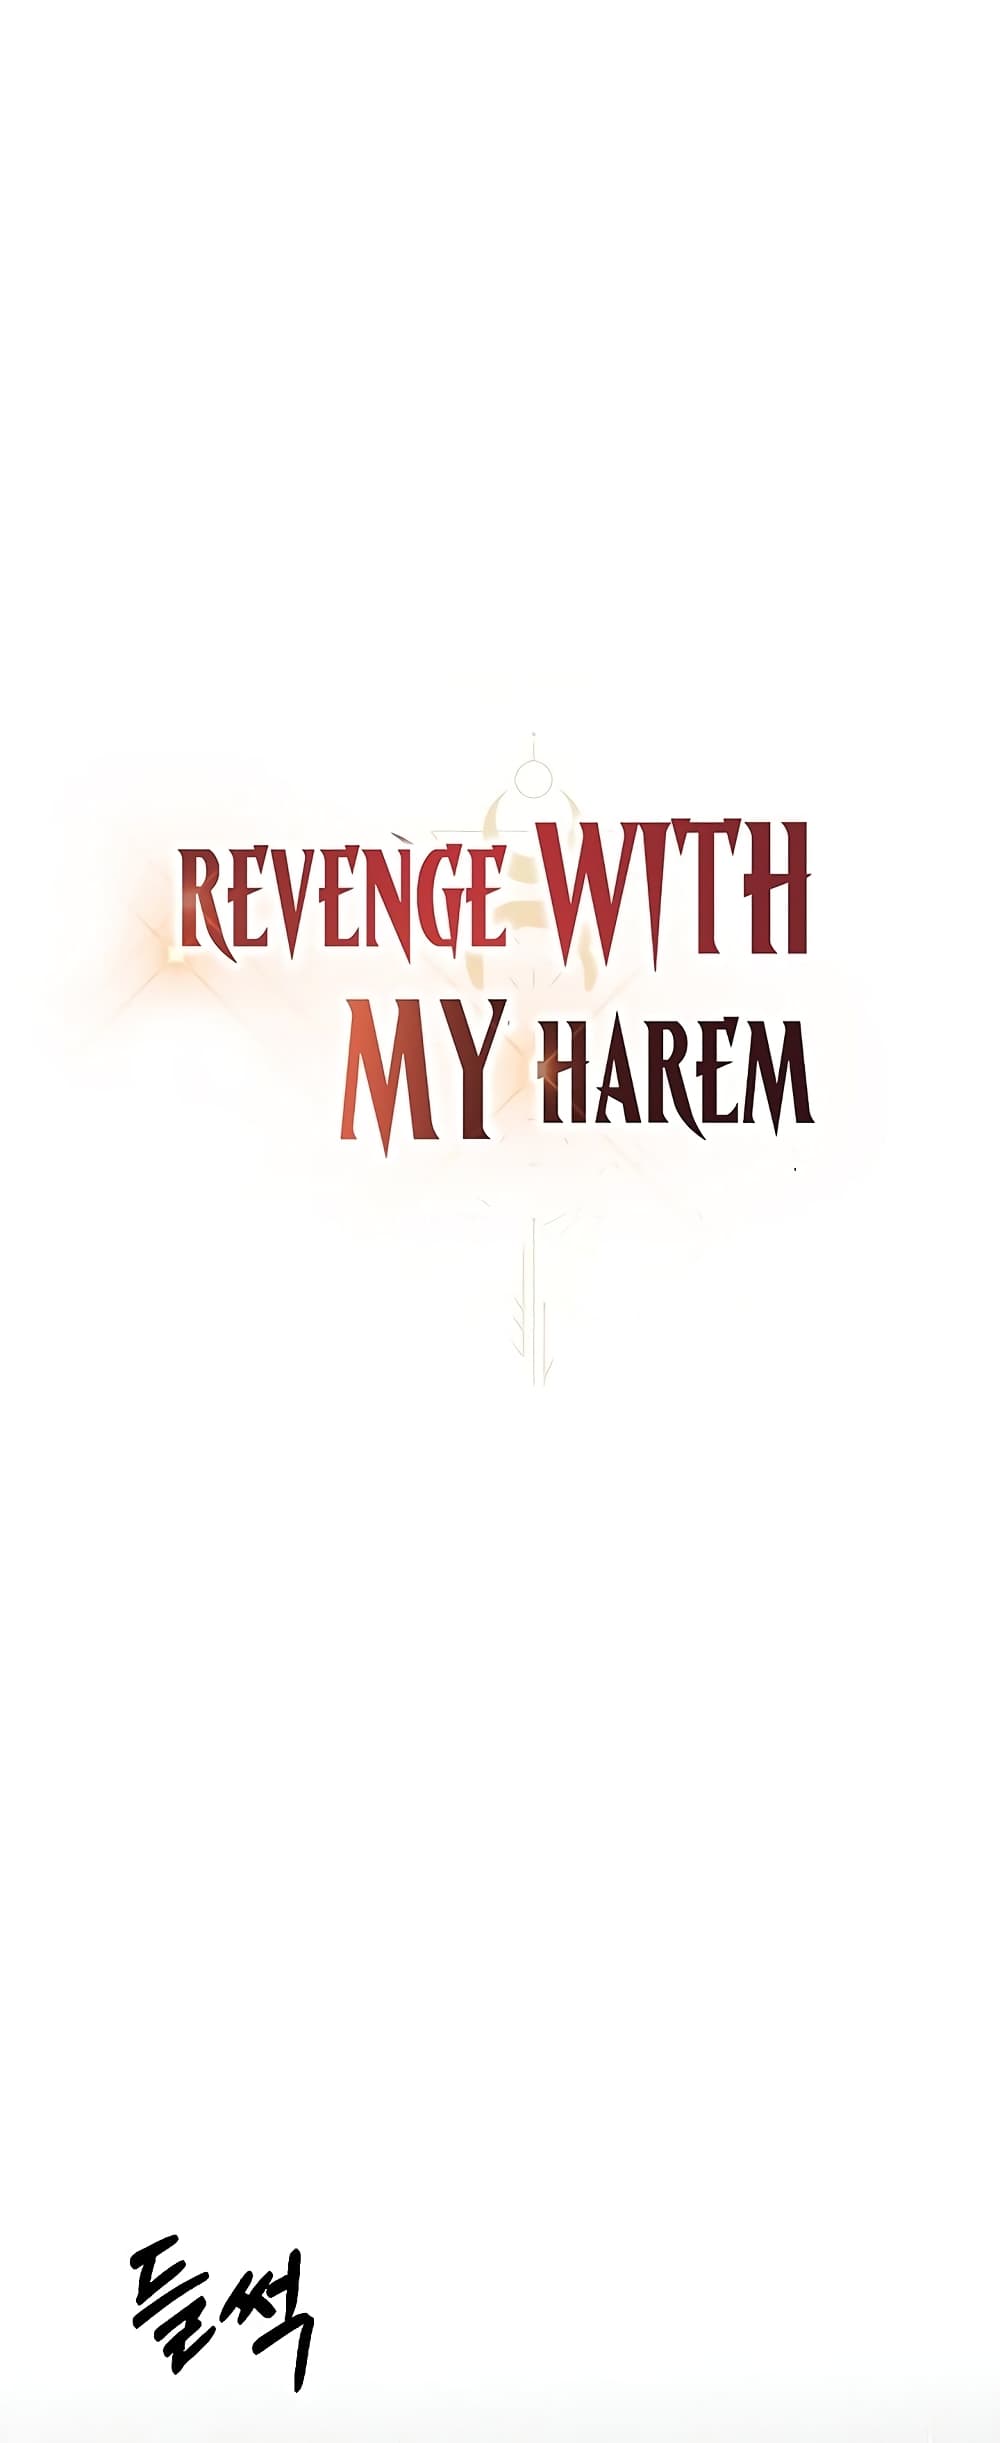 Revenge By Harem 11-11